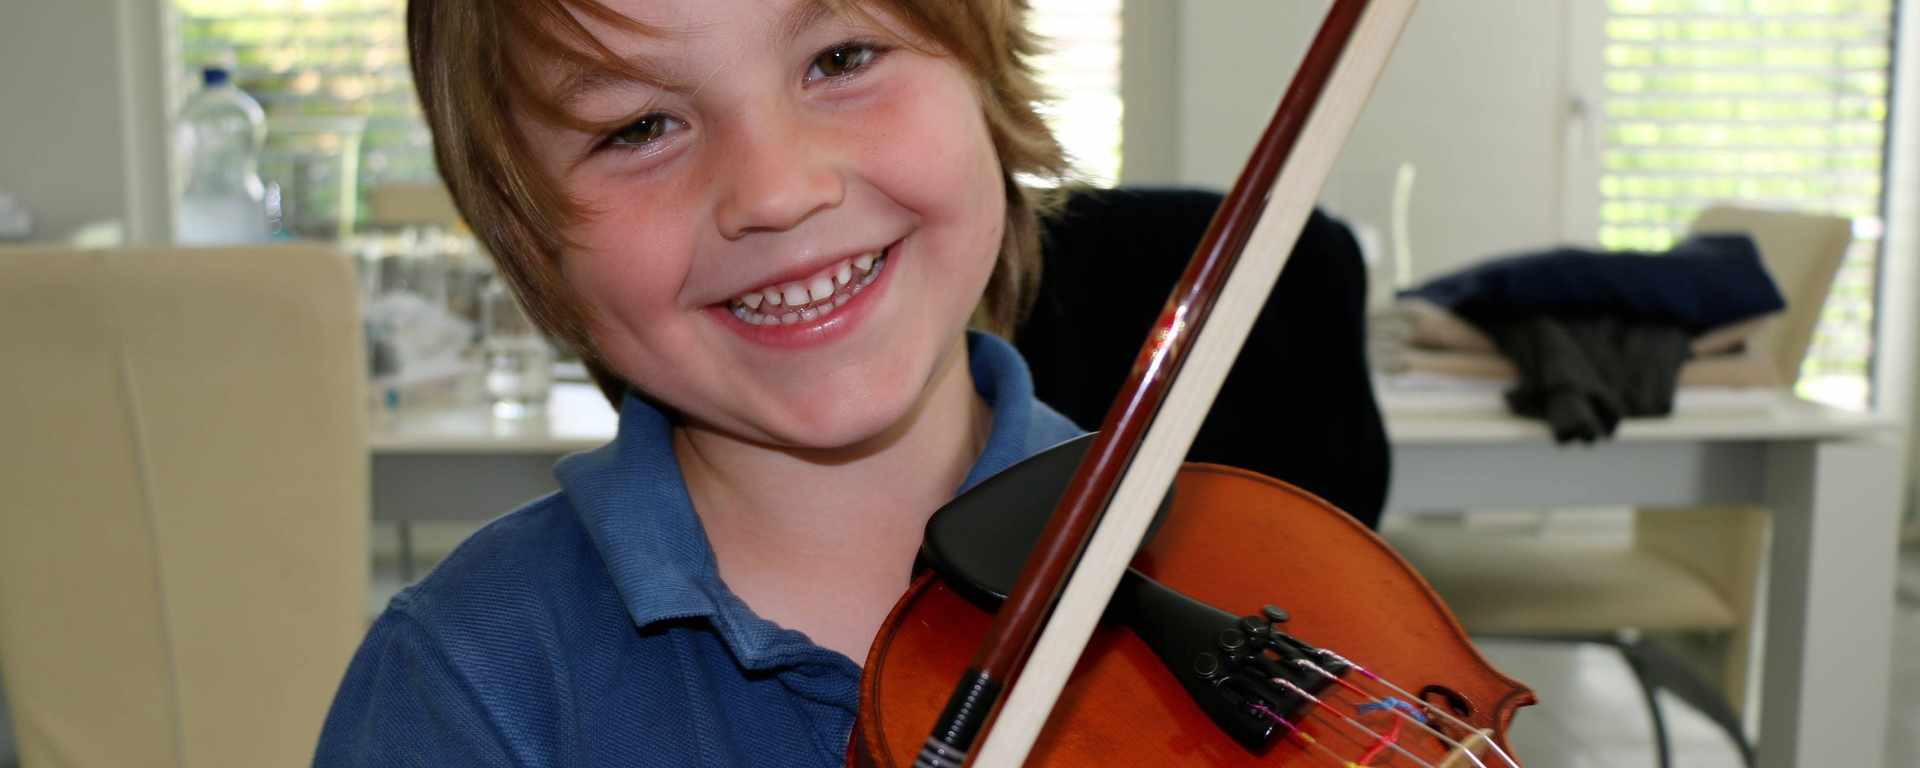 Violinunterricht für Kinder und Jugendliche an der Goldküste.